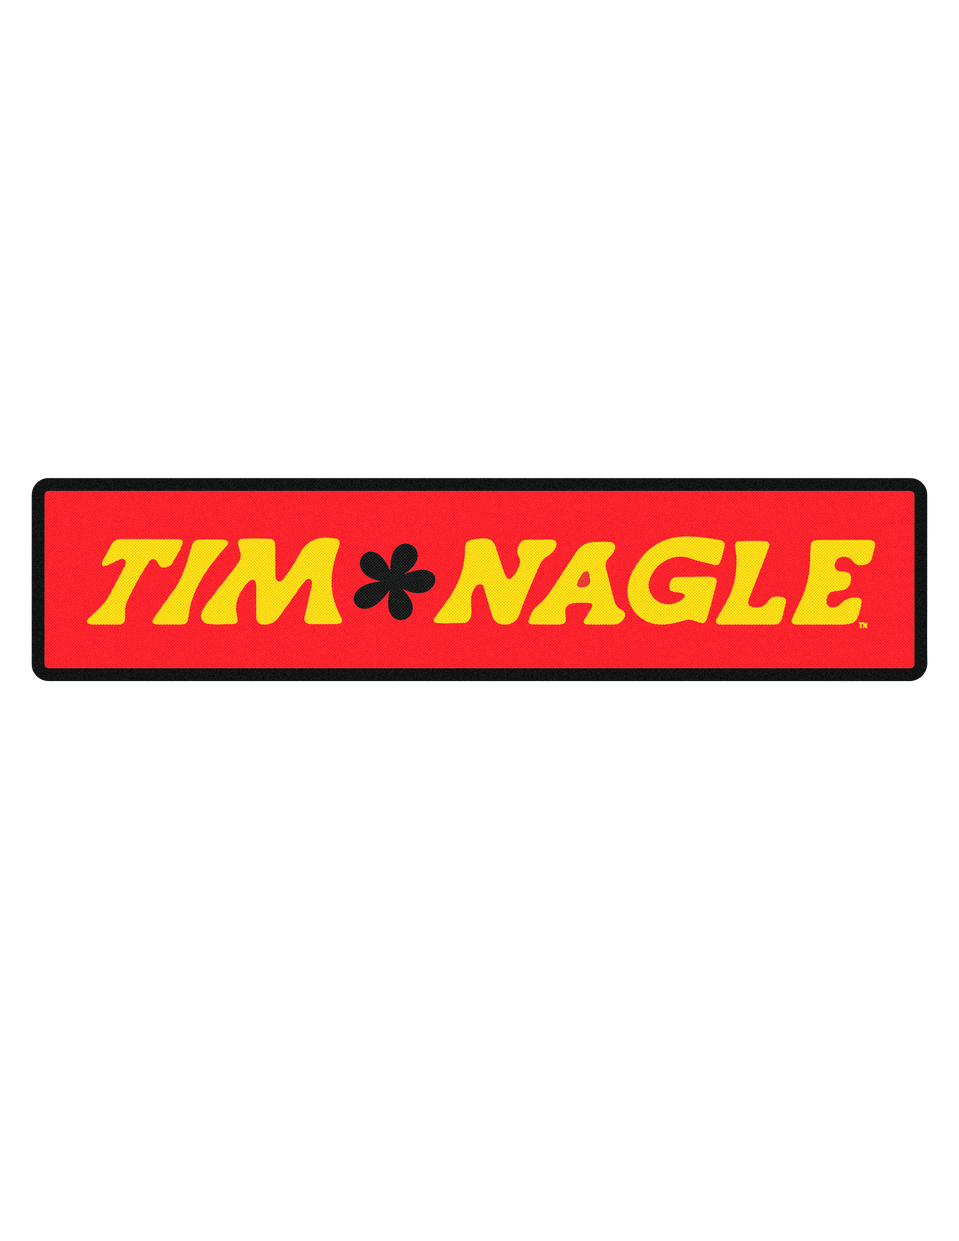 Tim Nagle's Portfolio